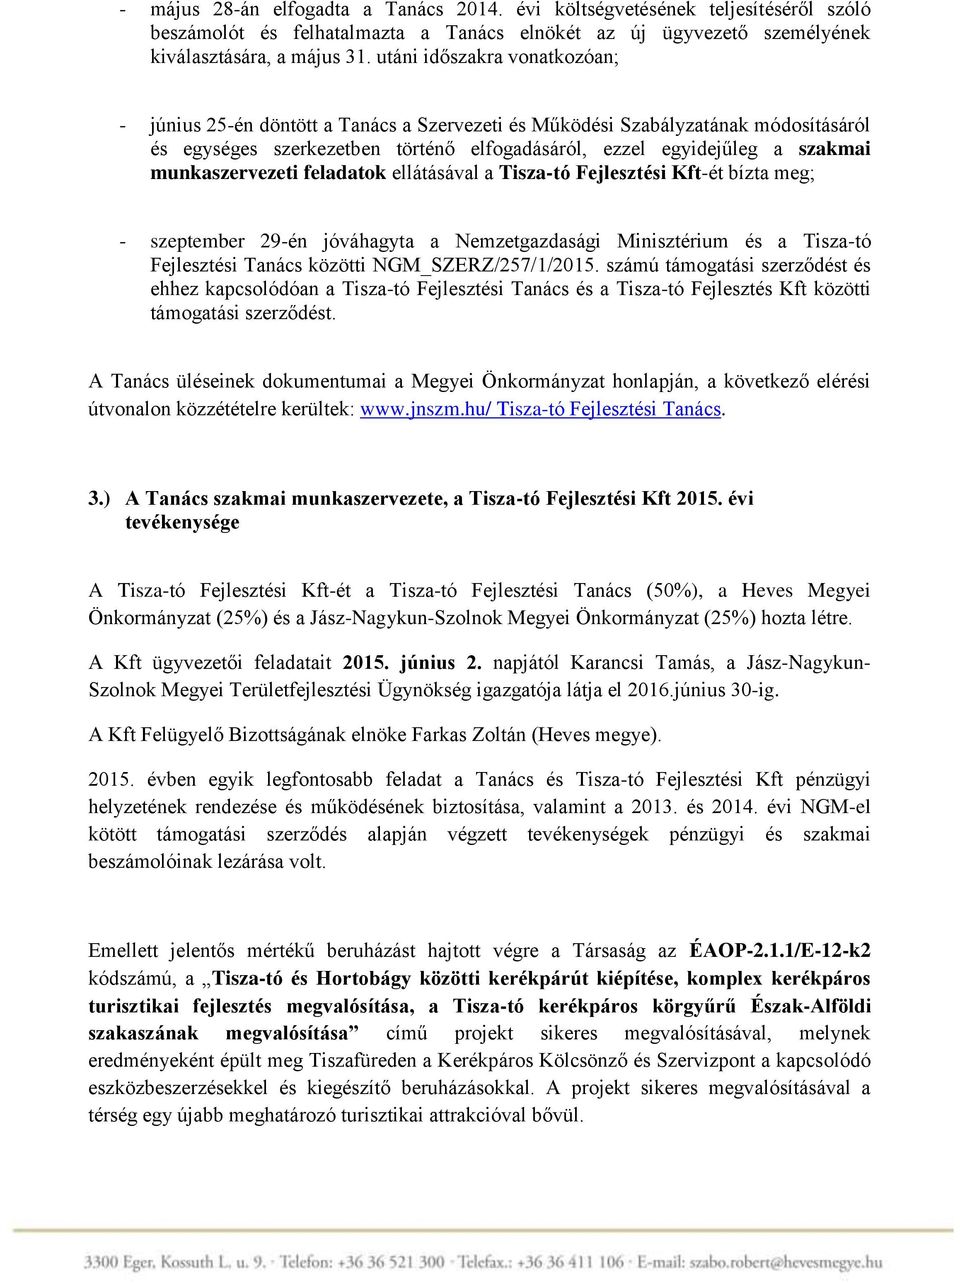 munkaszervezeti feladatok ellátásával a Tisza-tó Fejlesztési Kft-ét bízta meg; - szeptember 29-én jóváhagyta a Nemzetgazdasági Minisztérium és a Tisza-tó Fejlesztési Tanács közötti